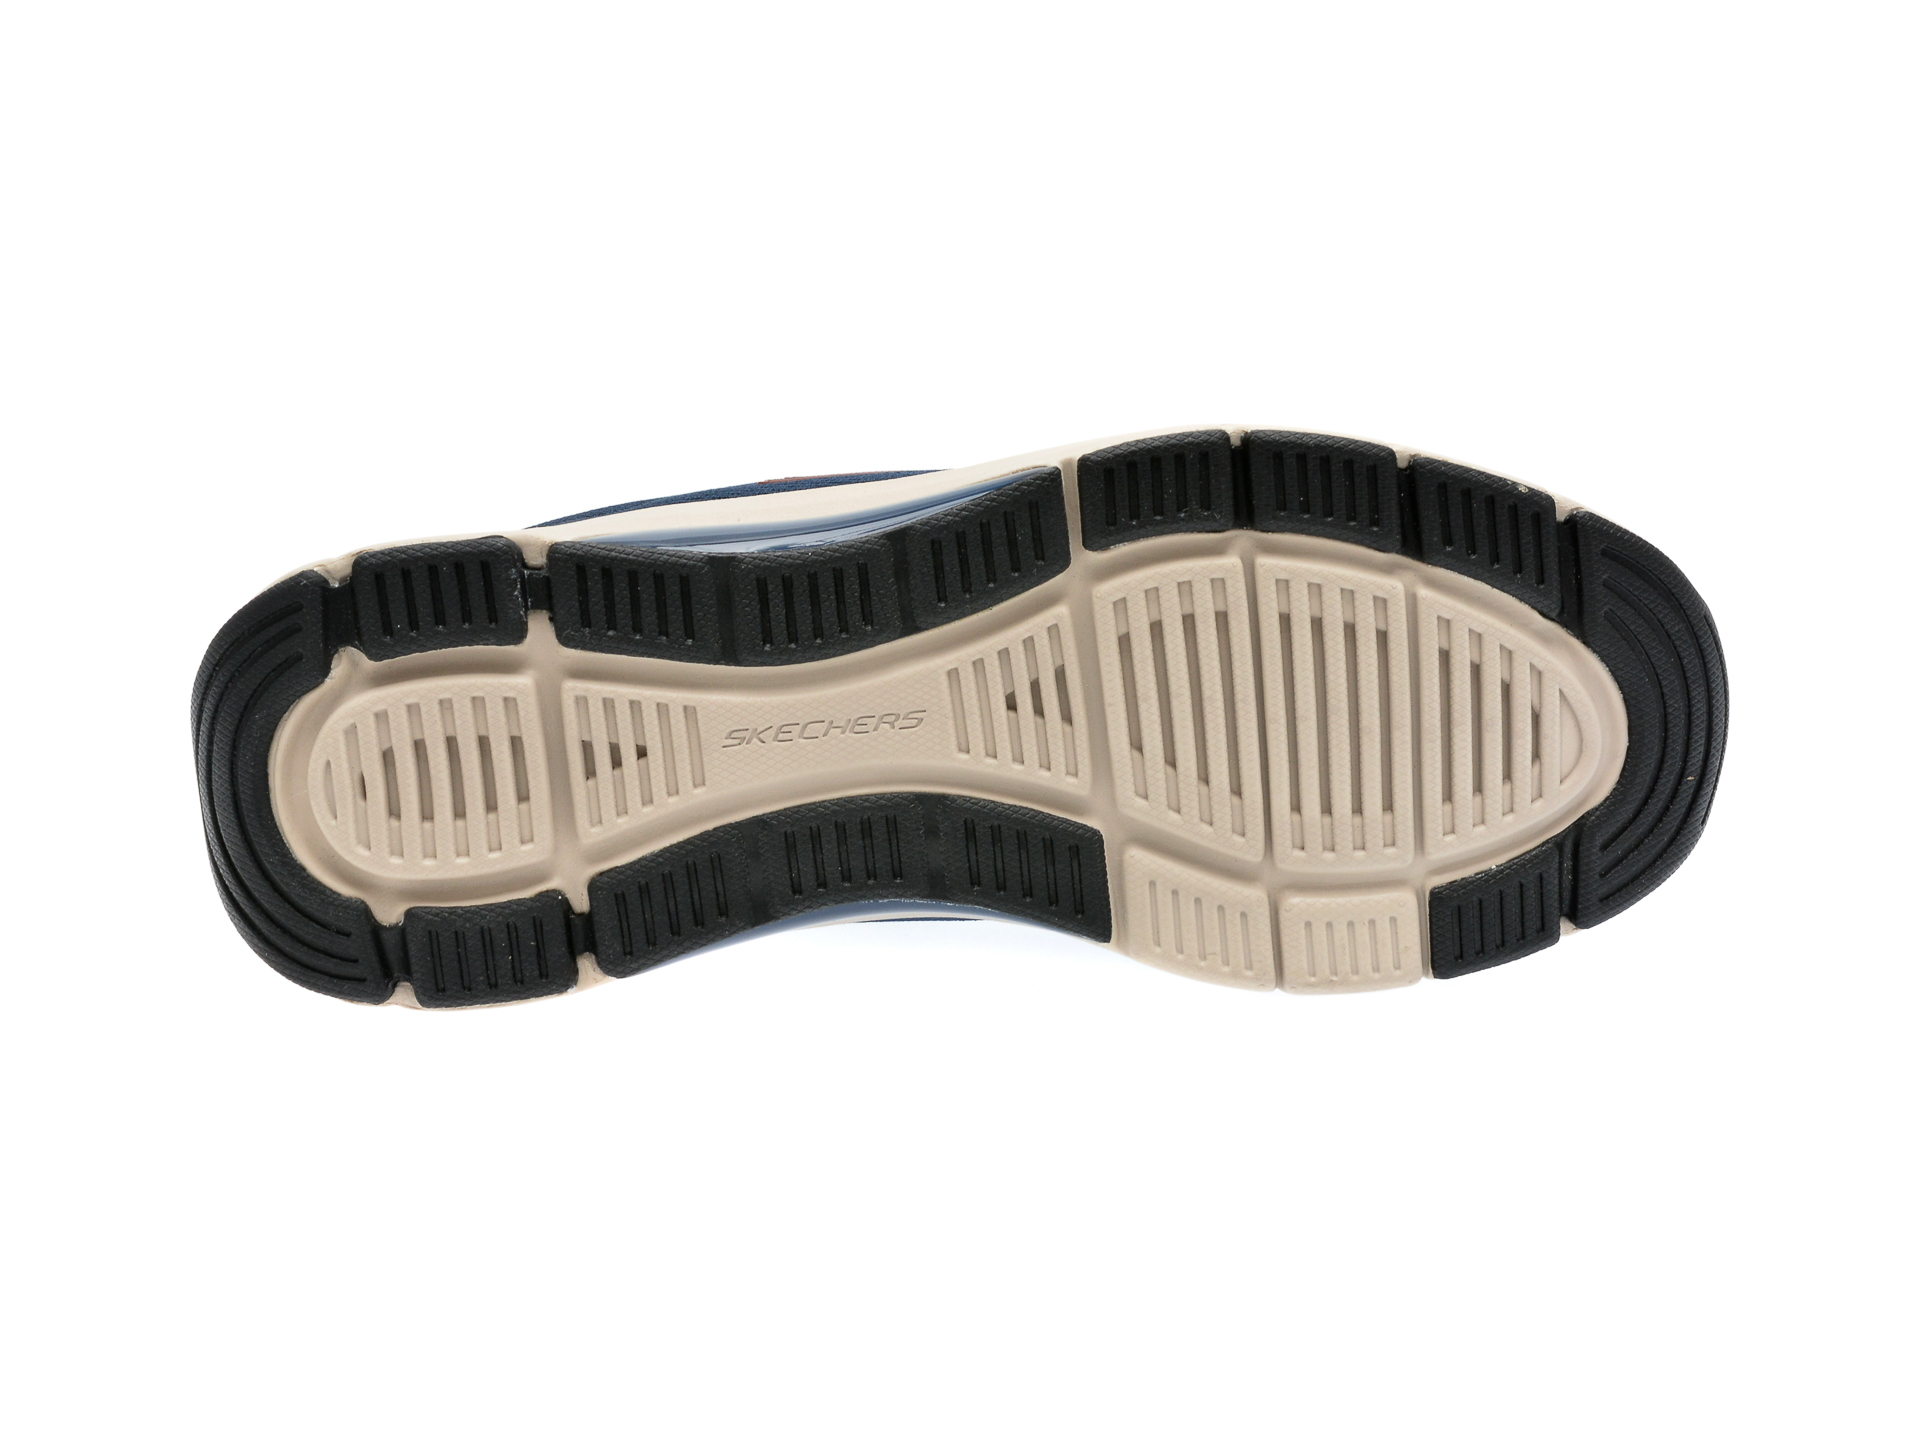 Poze Pantofi SKECHERS bleumarin, SKECH-AIR ARCH FIT, din material textil tezyo.ro